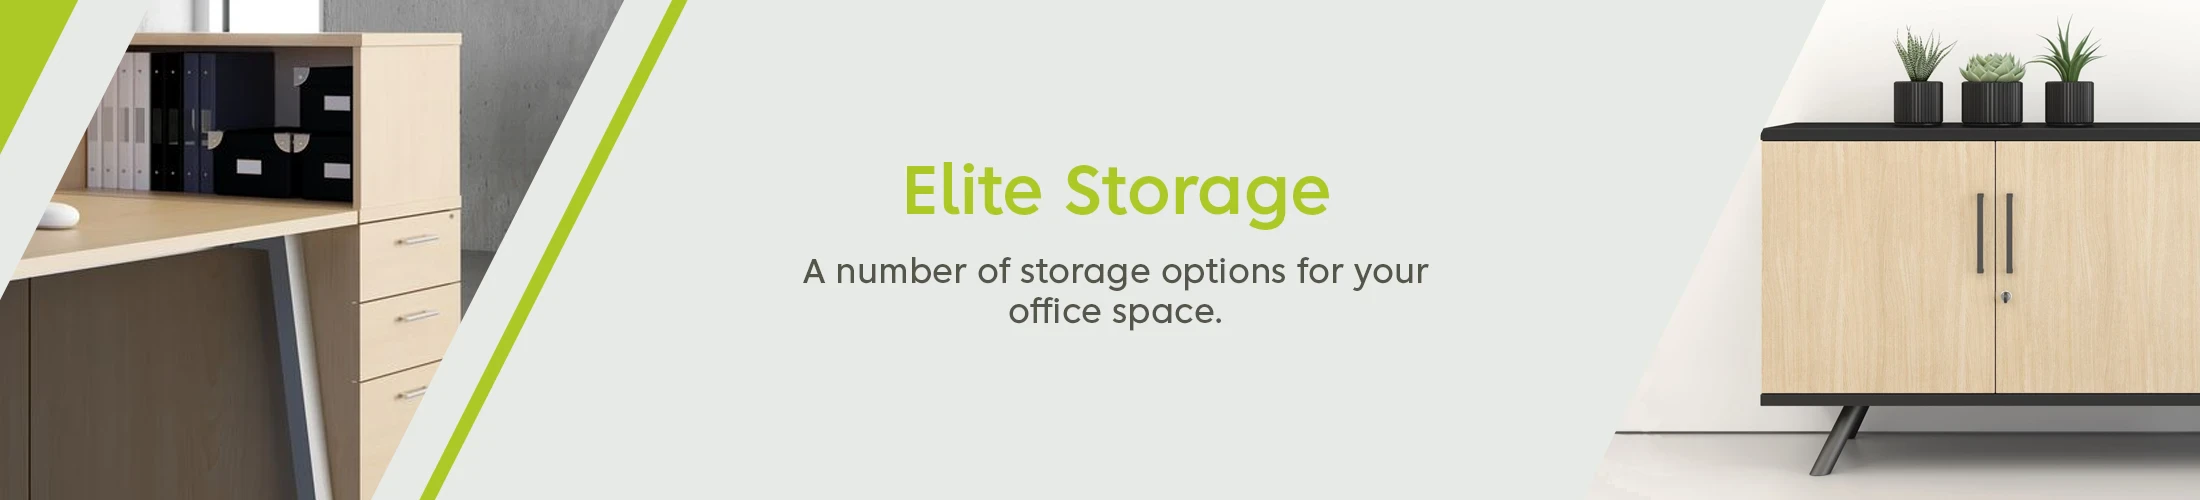 Elite storage unit banner